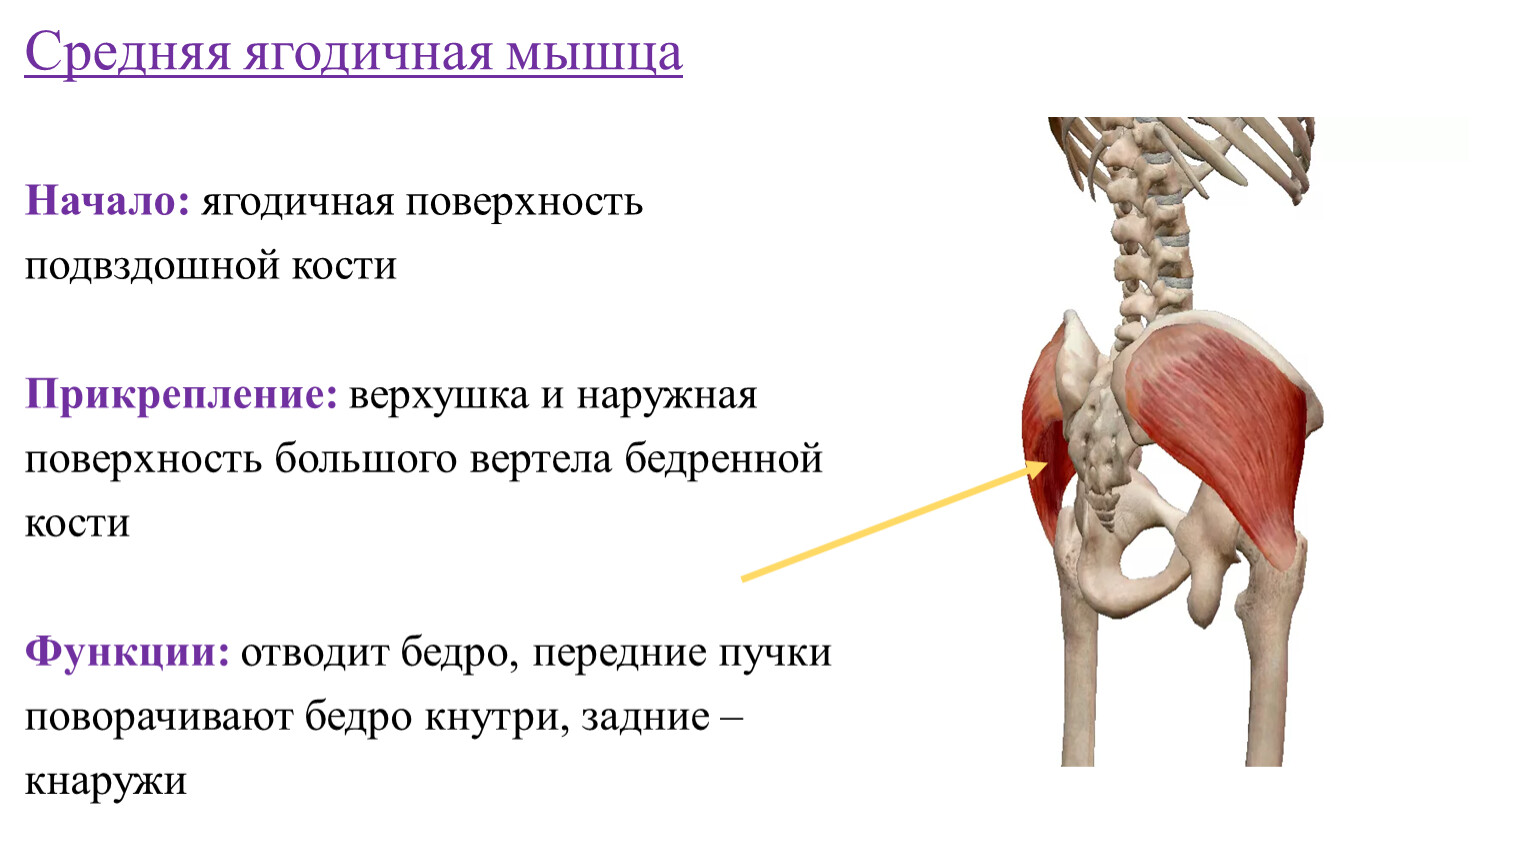 Подвздошная кость лечение. Средняя ягодичная мышца функции. Средняя ягодичная мышца начало прикрепление функции. Большая ягодичная мышца начало и прикрепление функция.